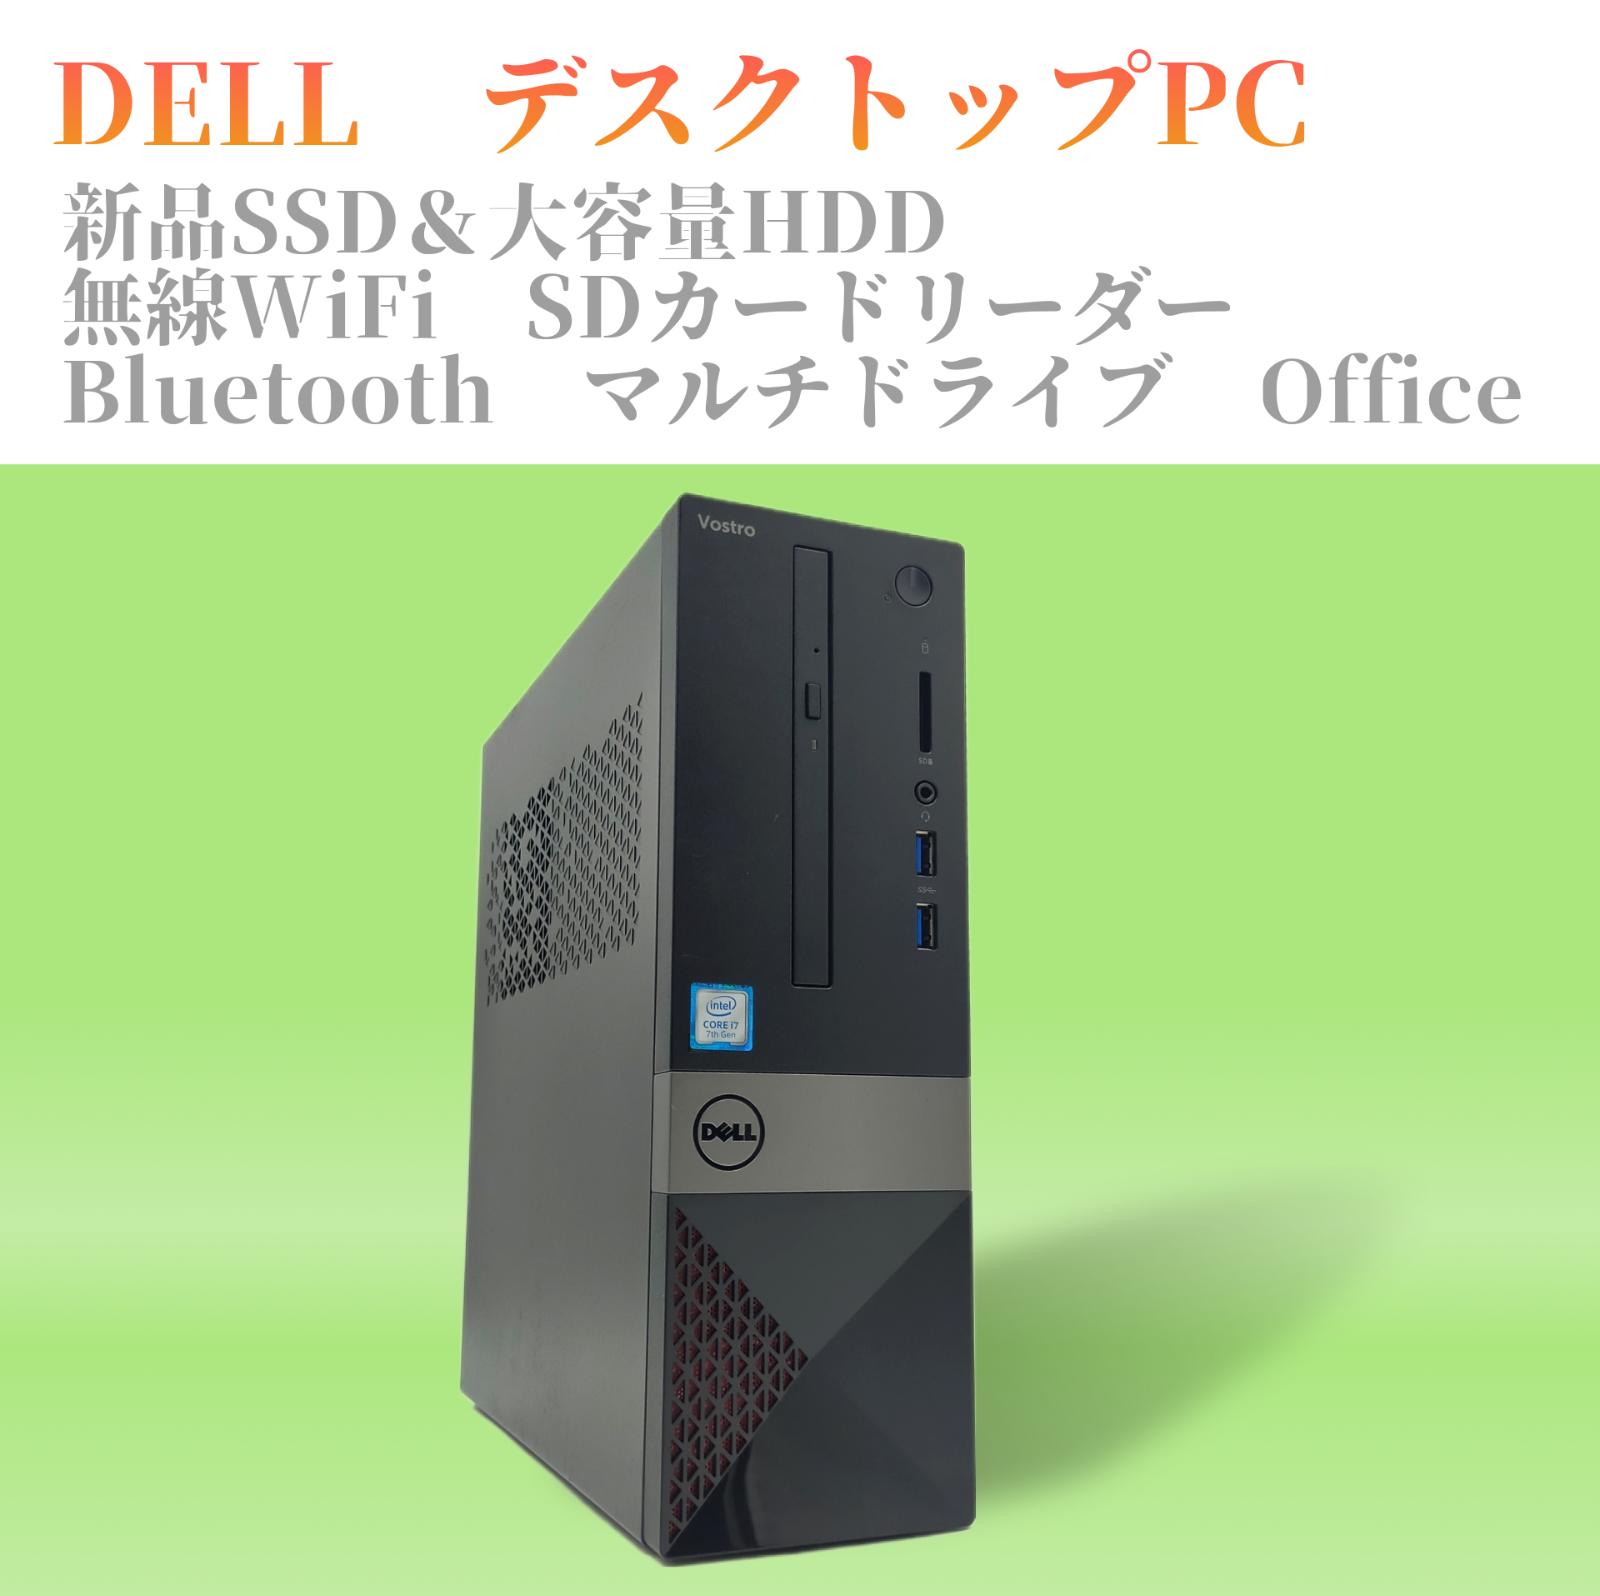 DELL Vostro デスクトップパソコン PC エクセル等搭載 WiFiみゆデスクトップ